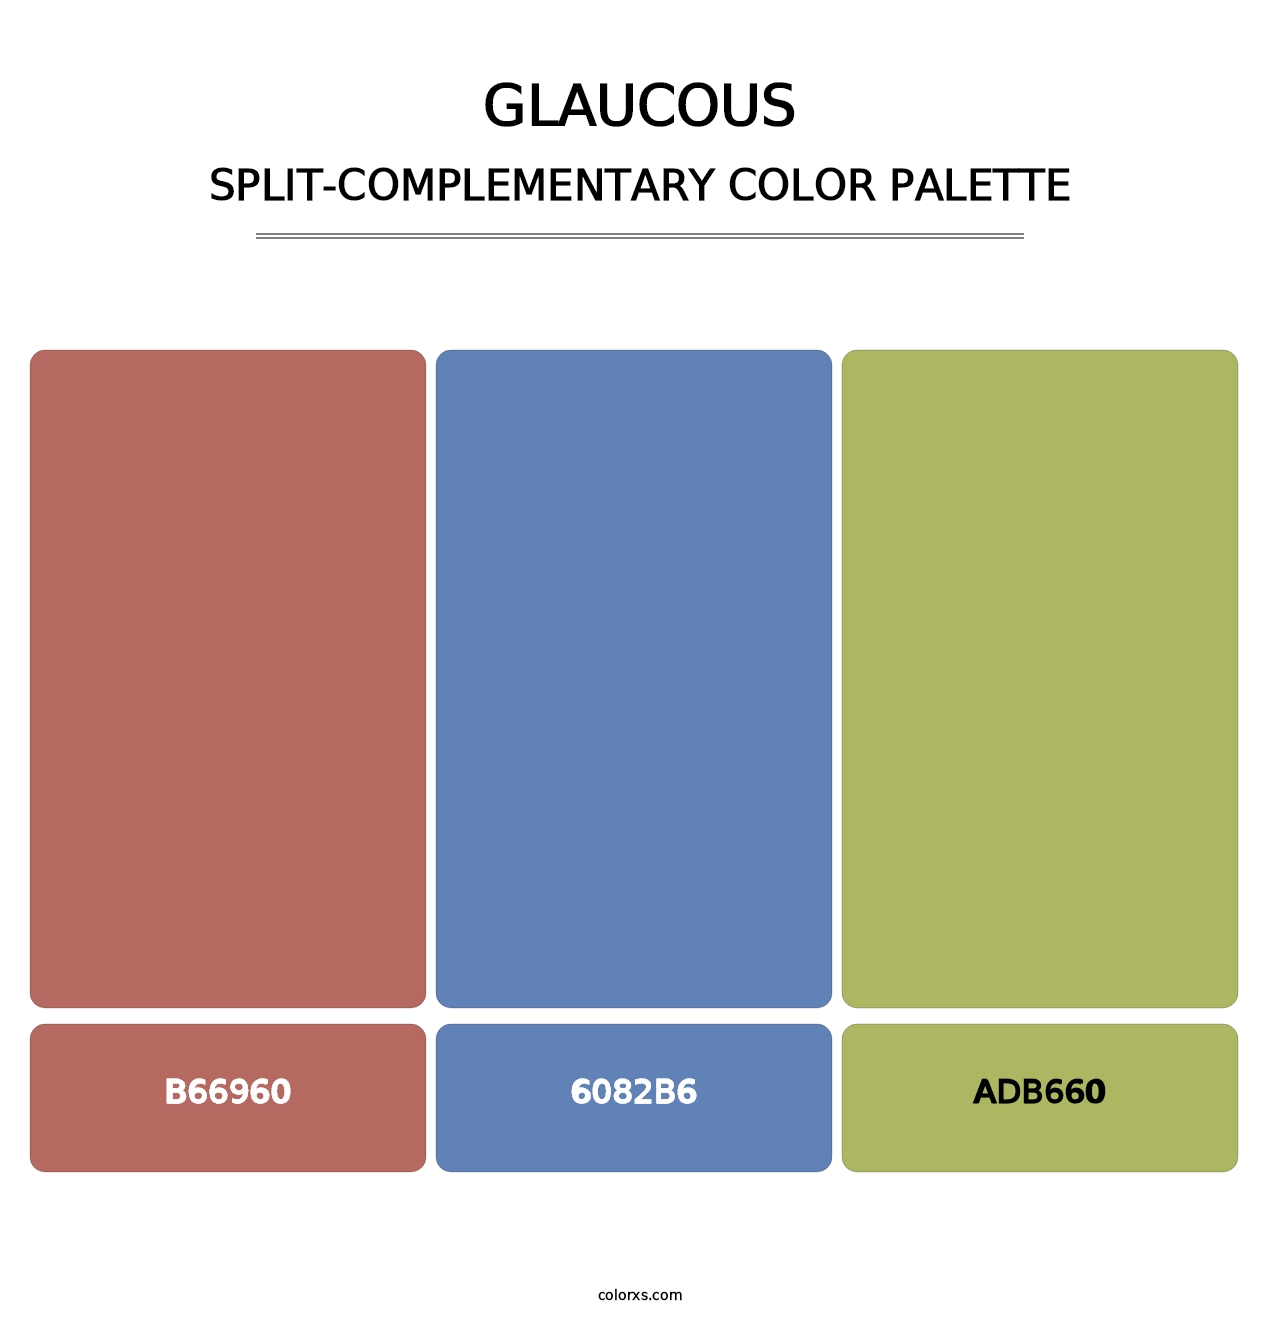 Glaucous - Split-Complementary Color Palette